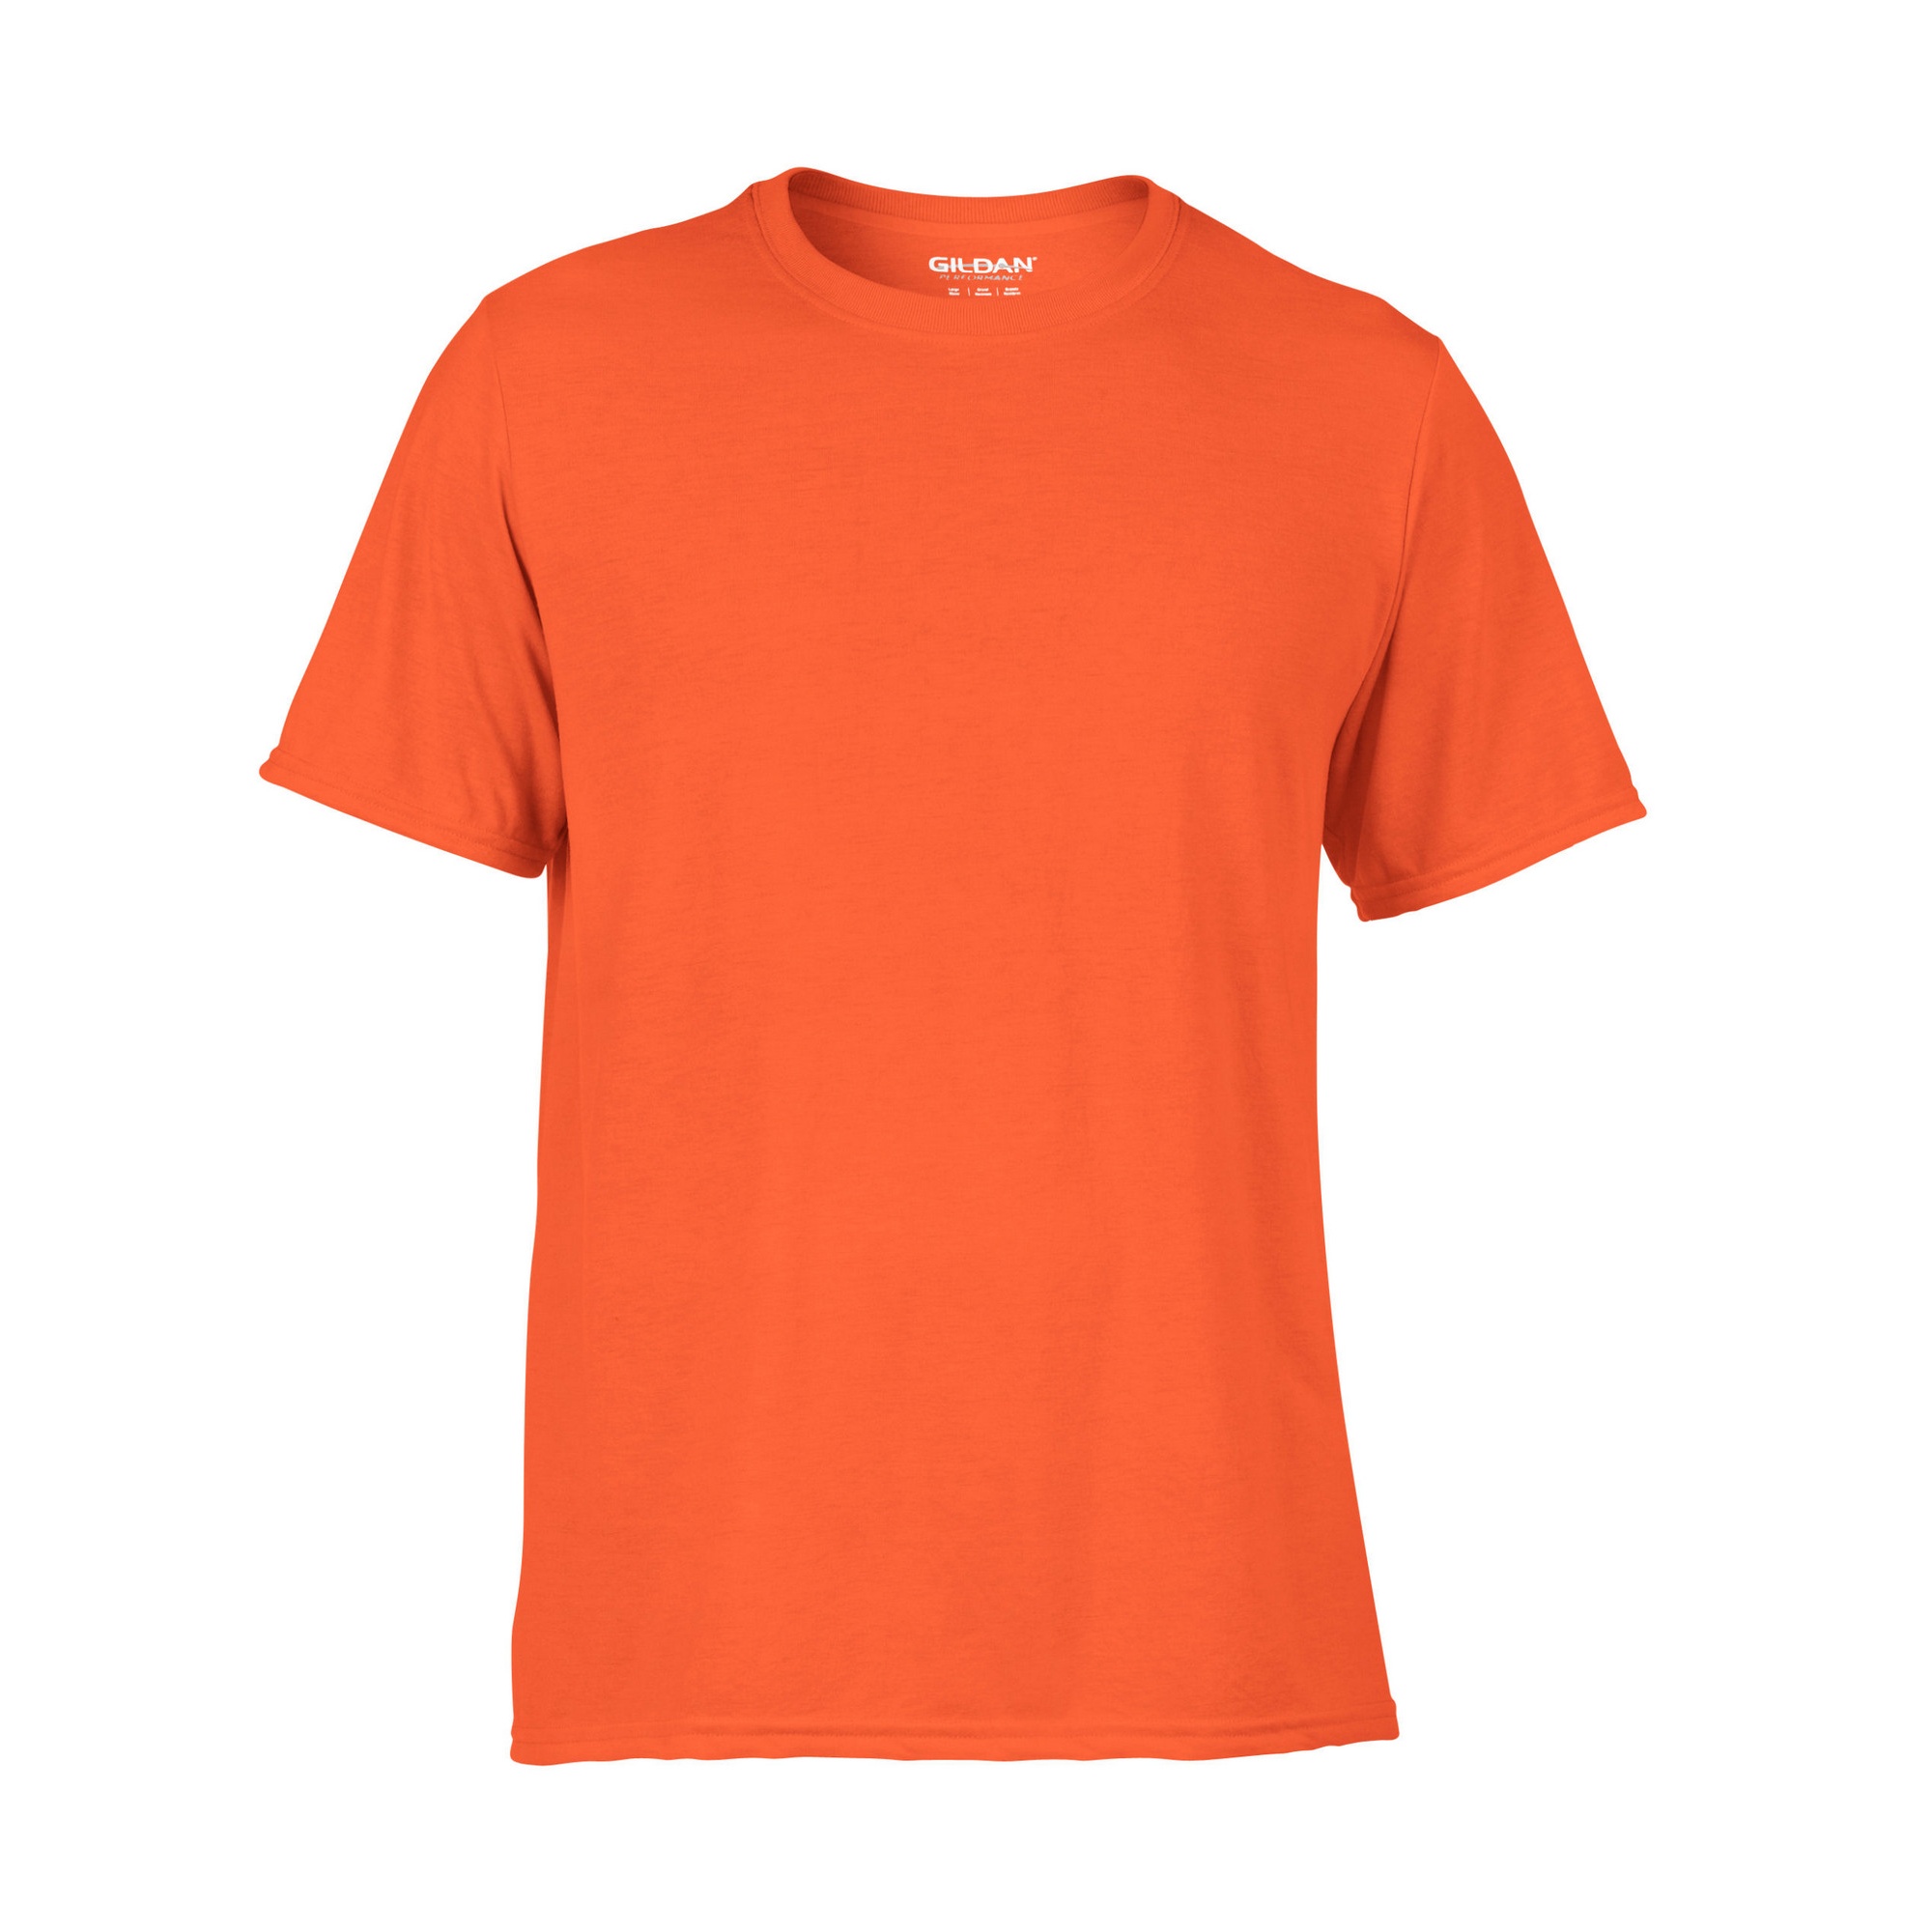 T-shirt Respirável Gildan - naranja - 